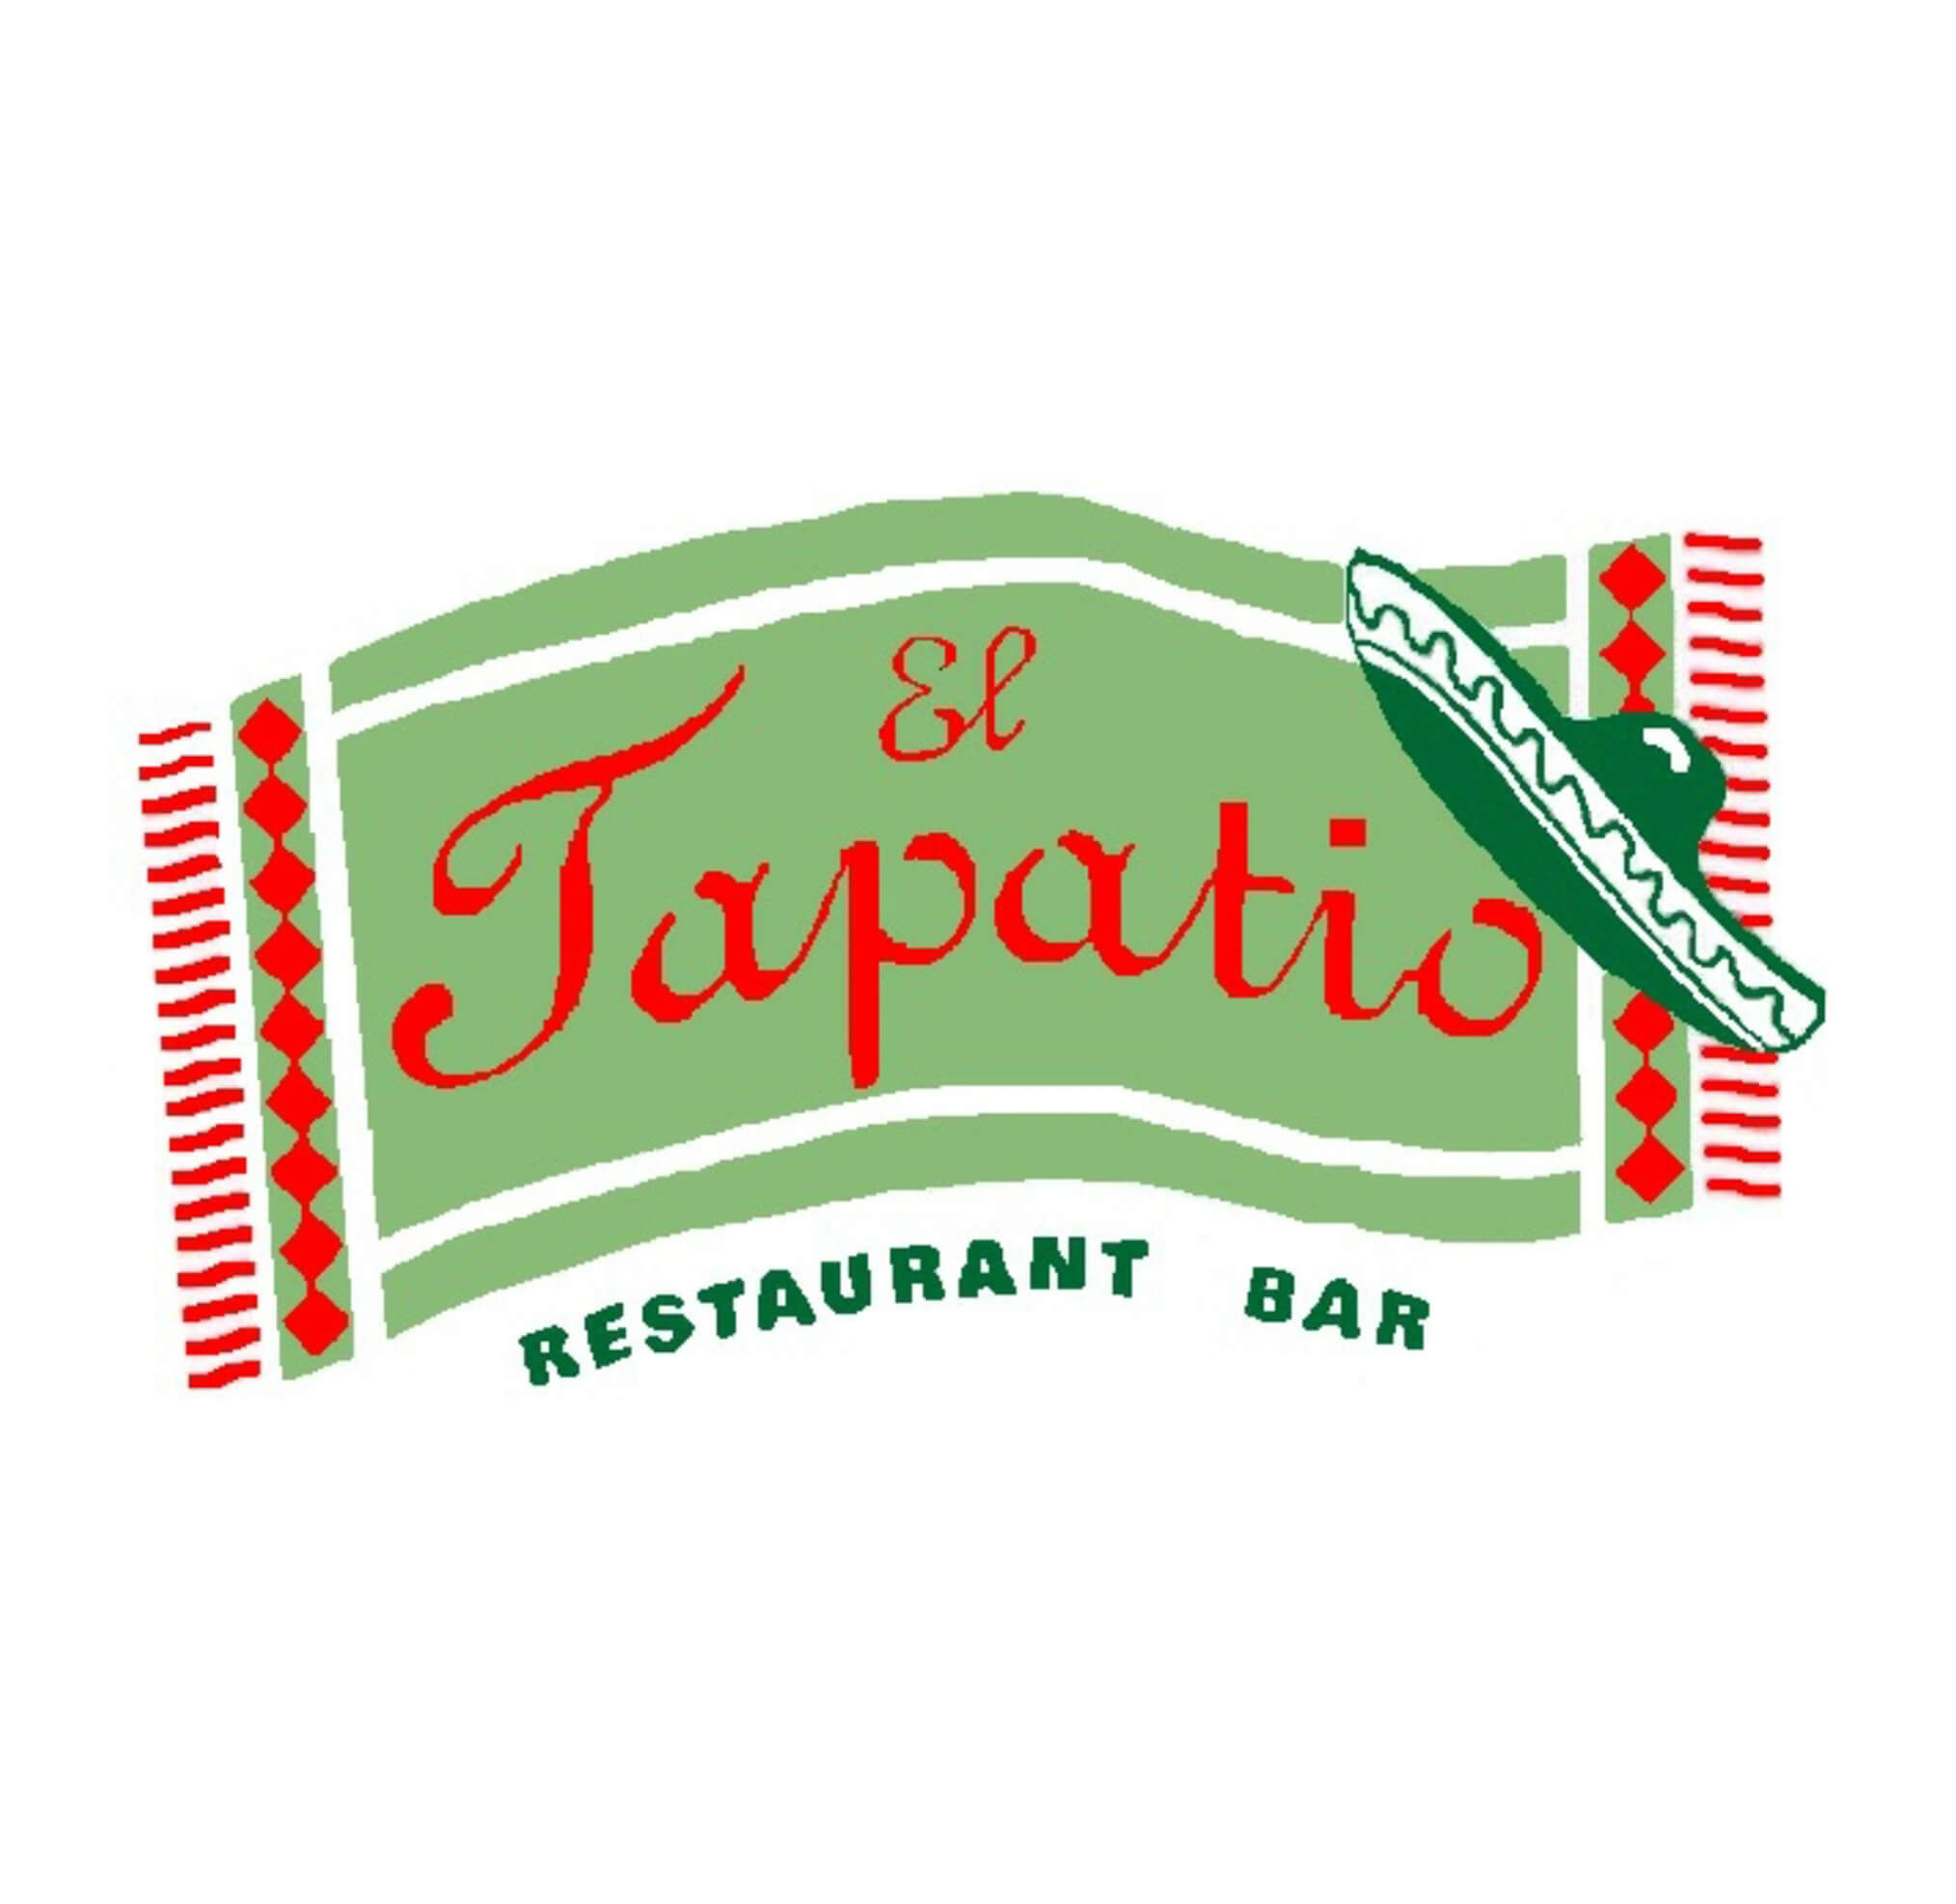 El Tapatio - Logo